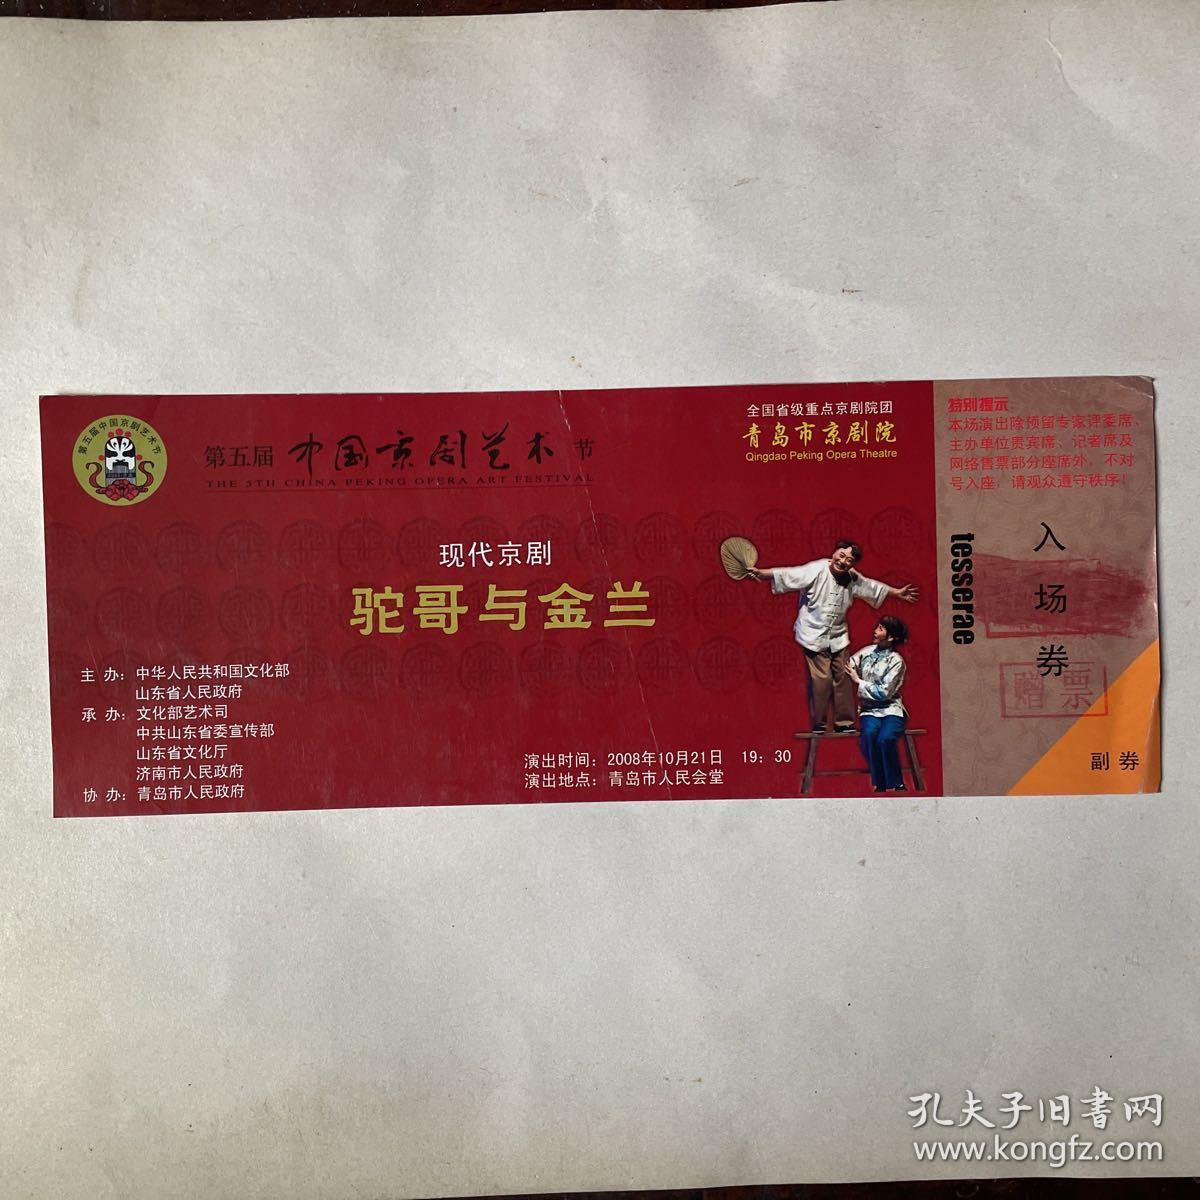 第五届中国京剧艺术节现代京剧《驼哥与金兰》入场券